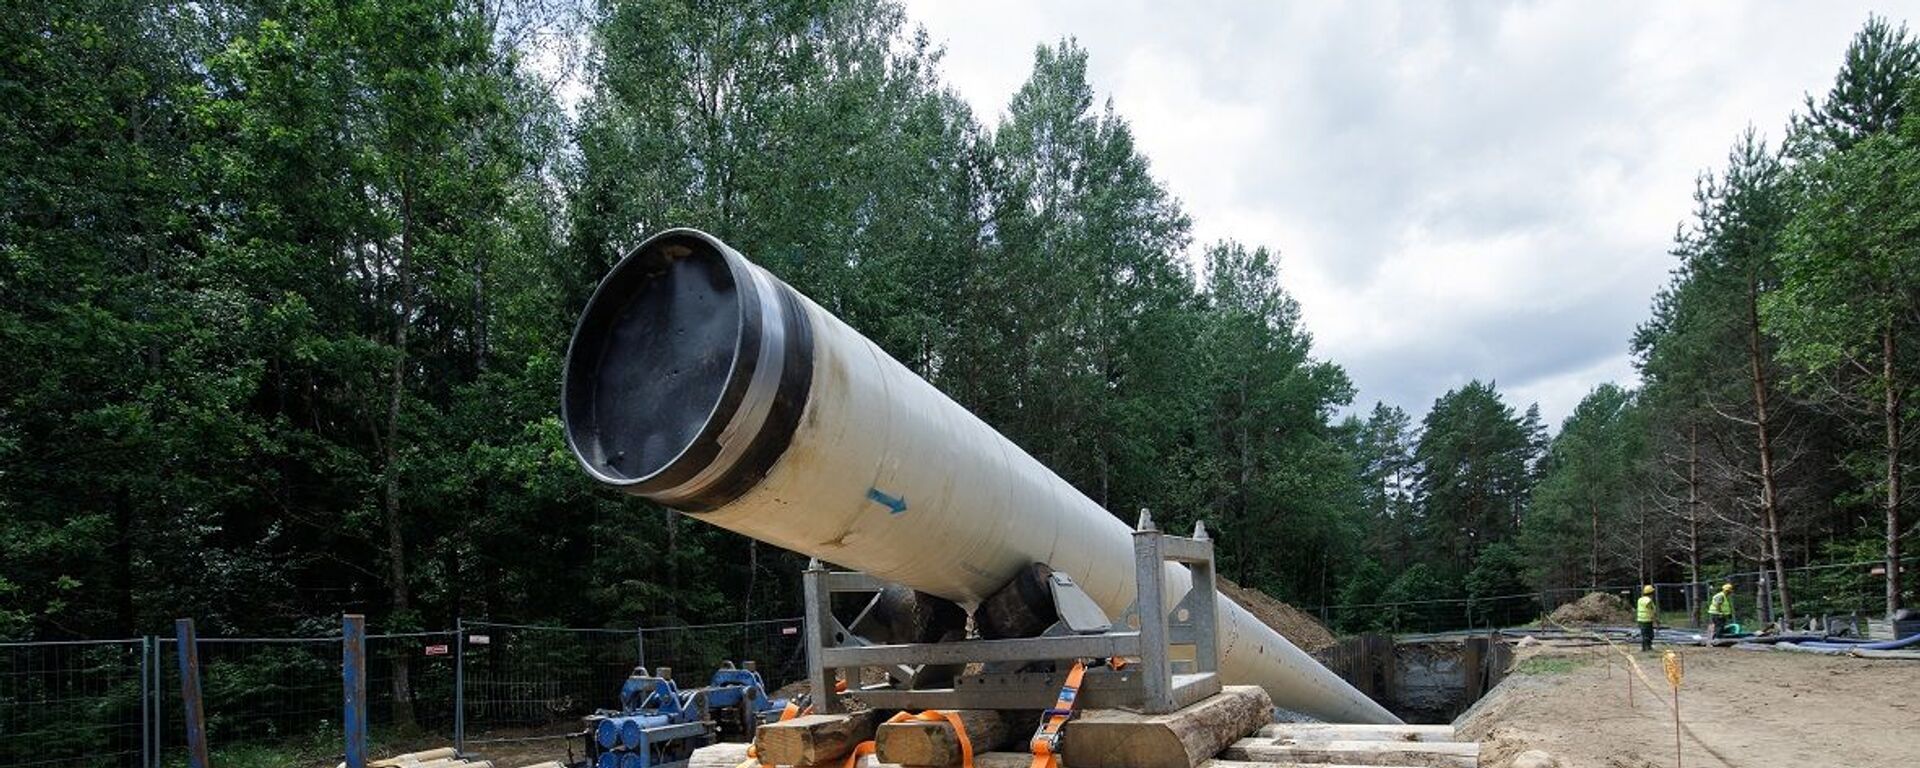 Завершены работы по горизонтально-направленному бурению (HDD) трубопровода GIPL под рекой Нерис, 2 июля 2020 - Sputnik Lietuva, 1920, 05.04.2021